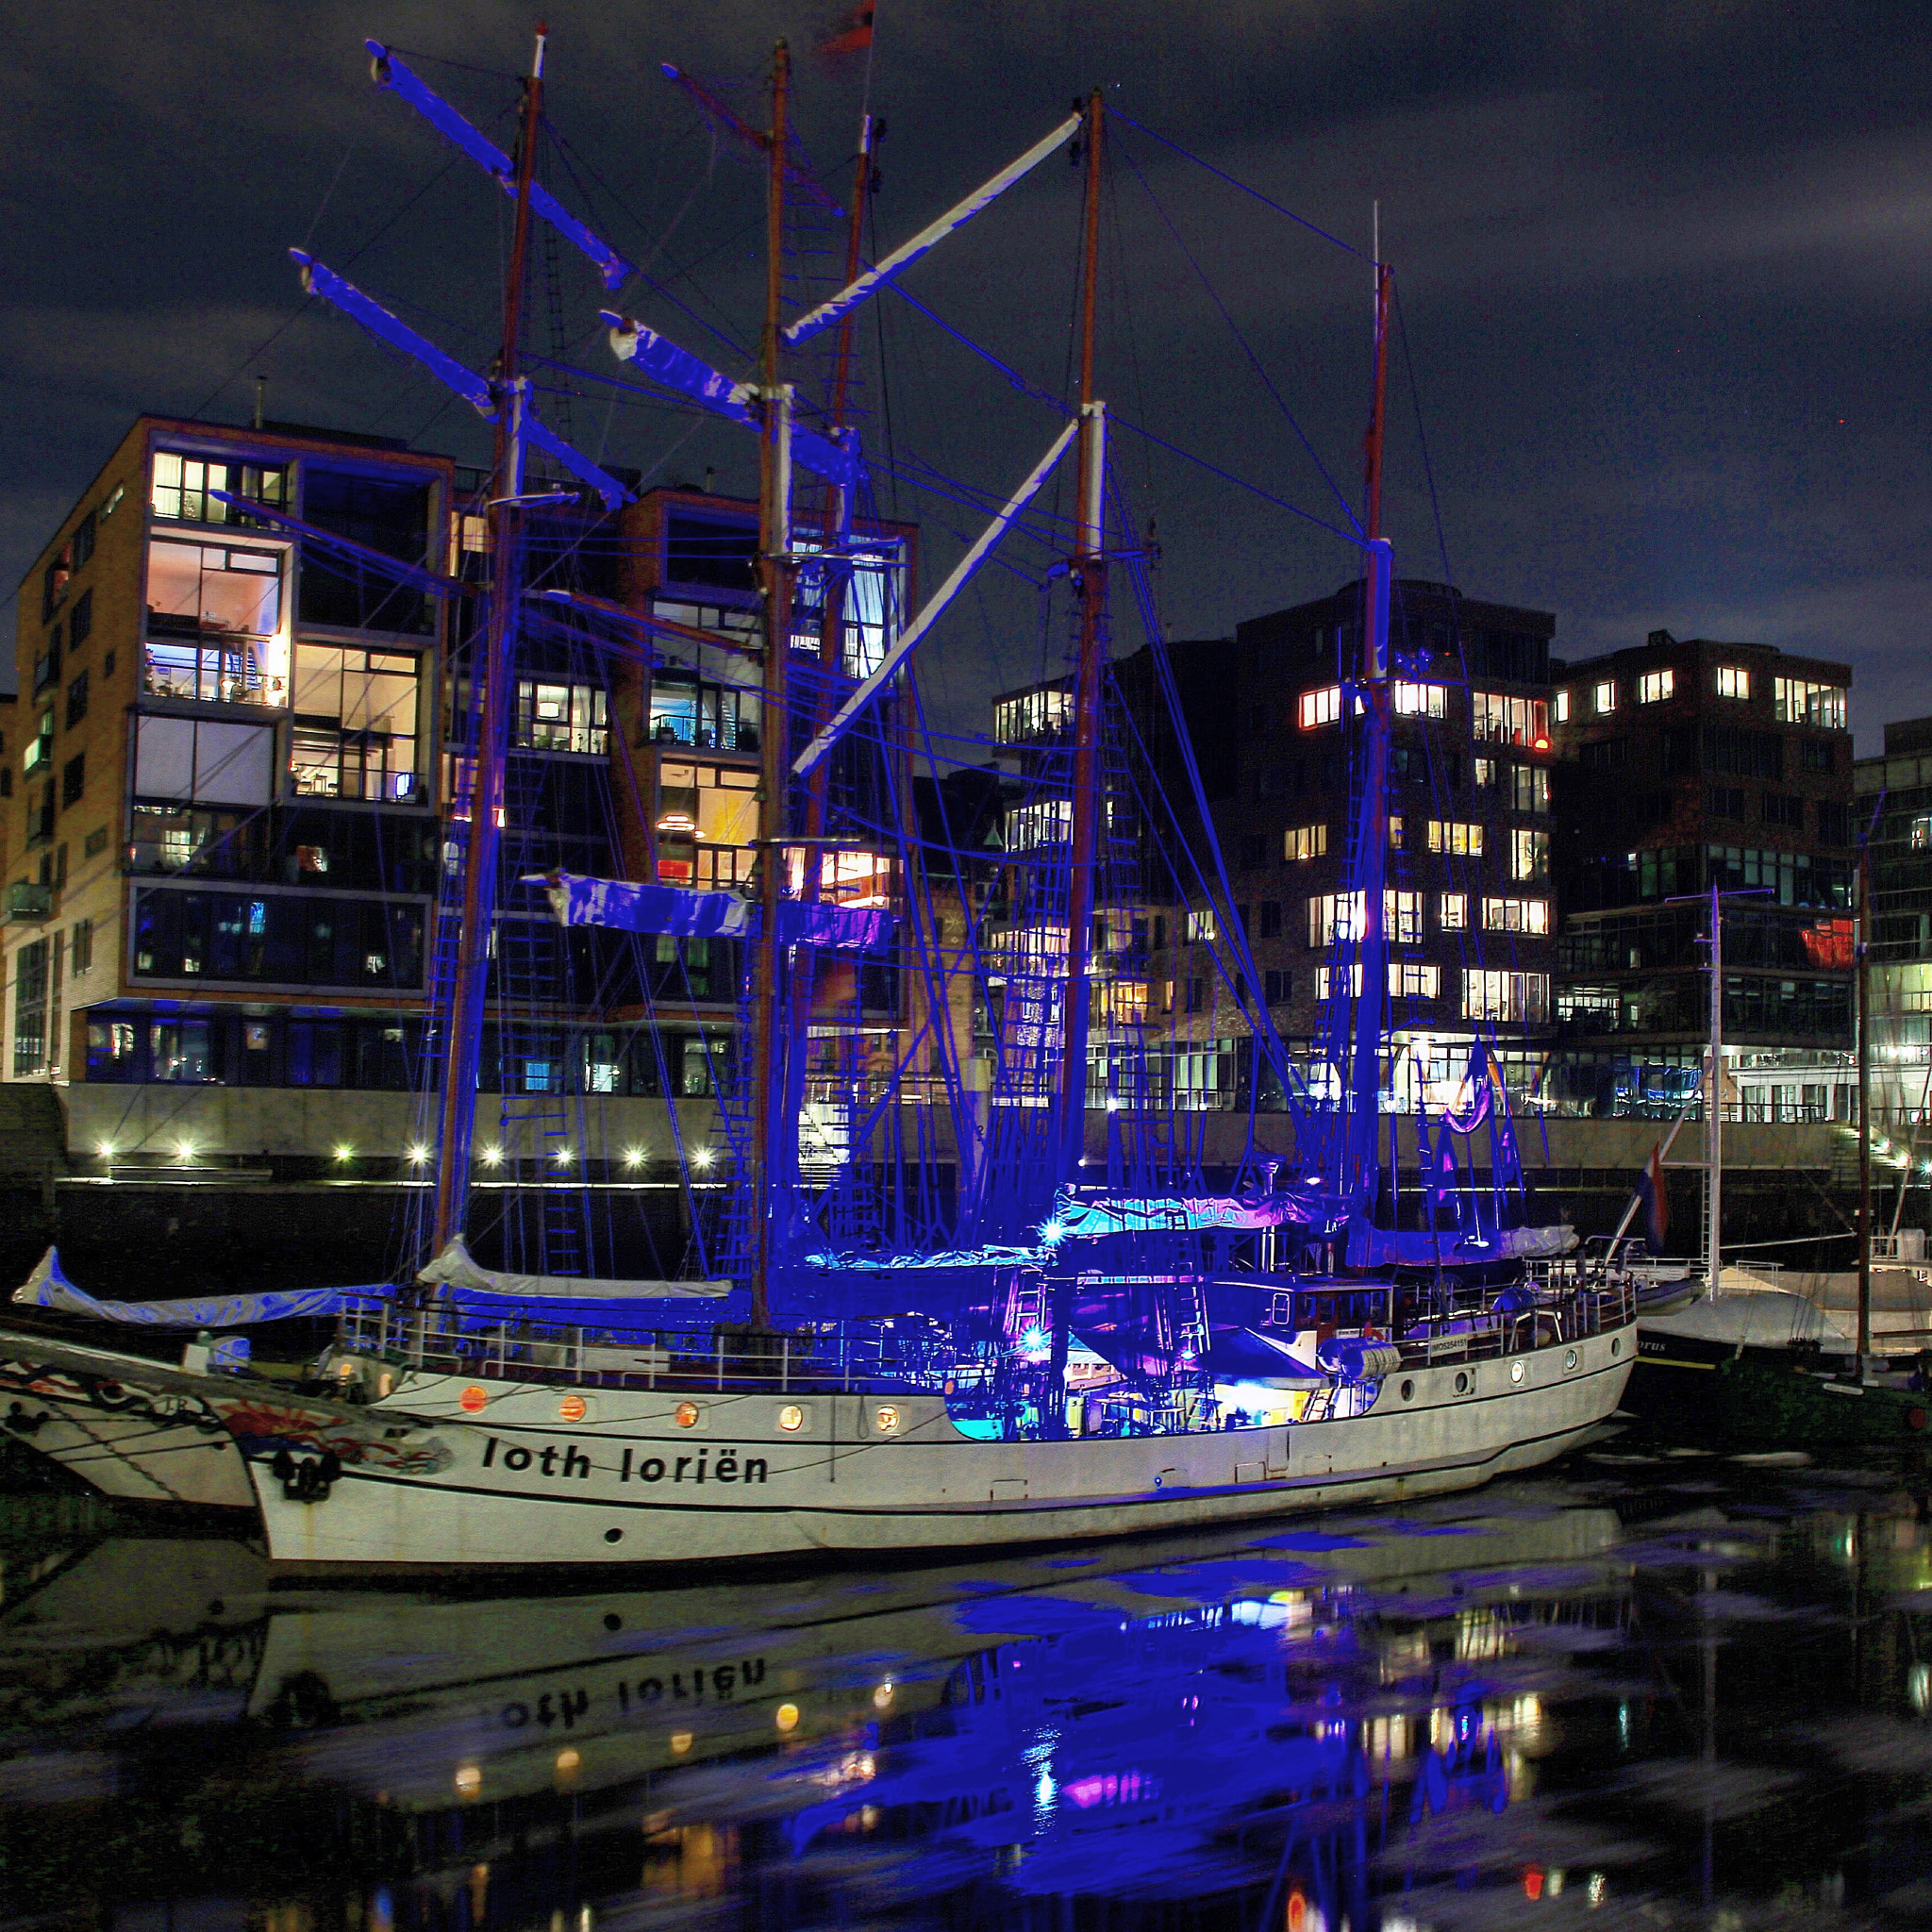 Canon EOS 7D sample photo. Abends werden vom deck aus die masten blau angestrahlt. hamburg hafen city photography